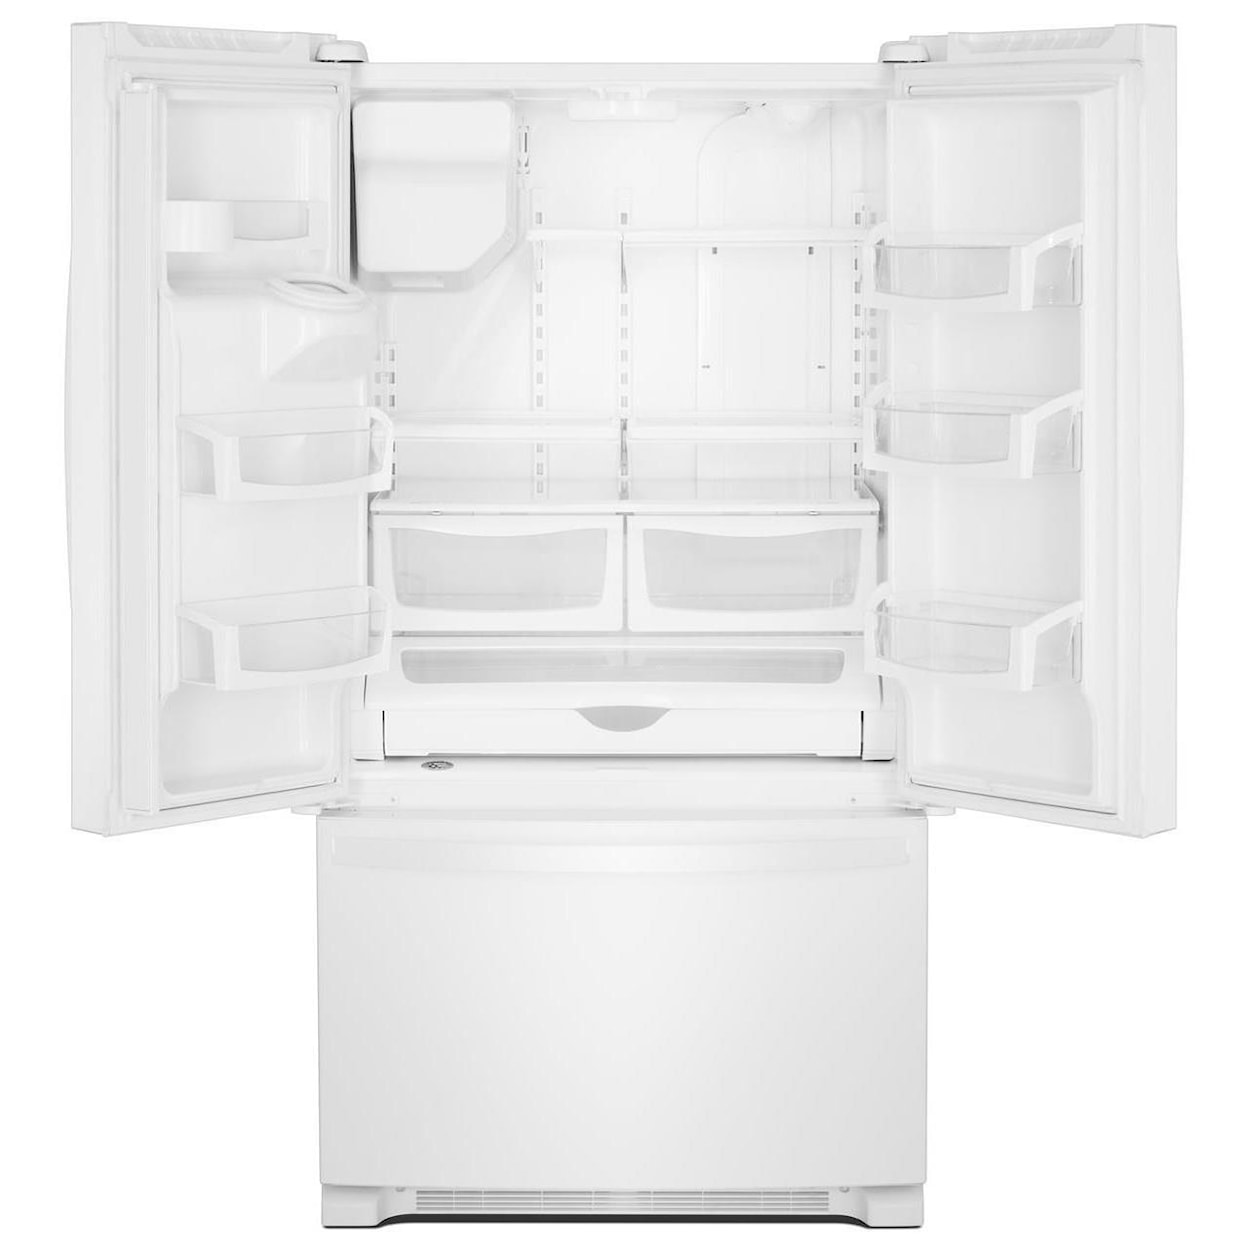 Whirlpool French Door Refrigerators 36" Wide French Door Refrigerator